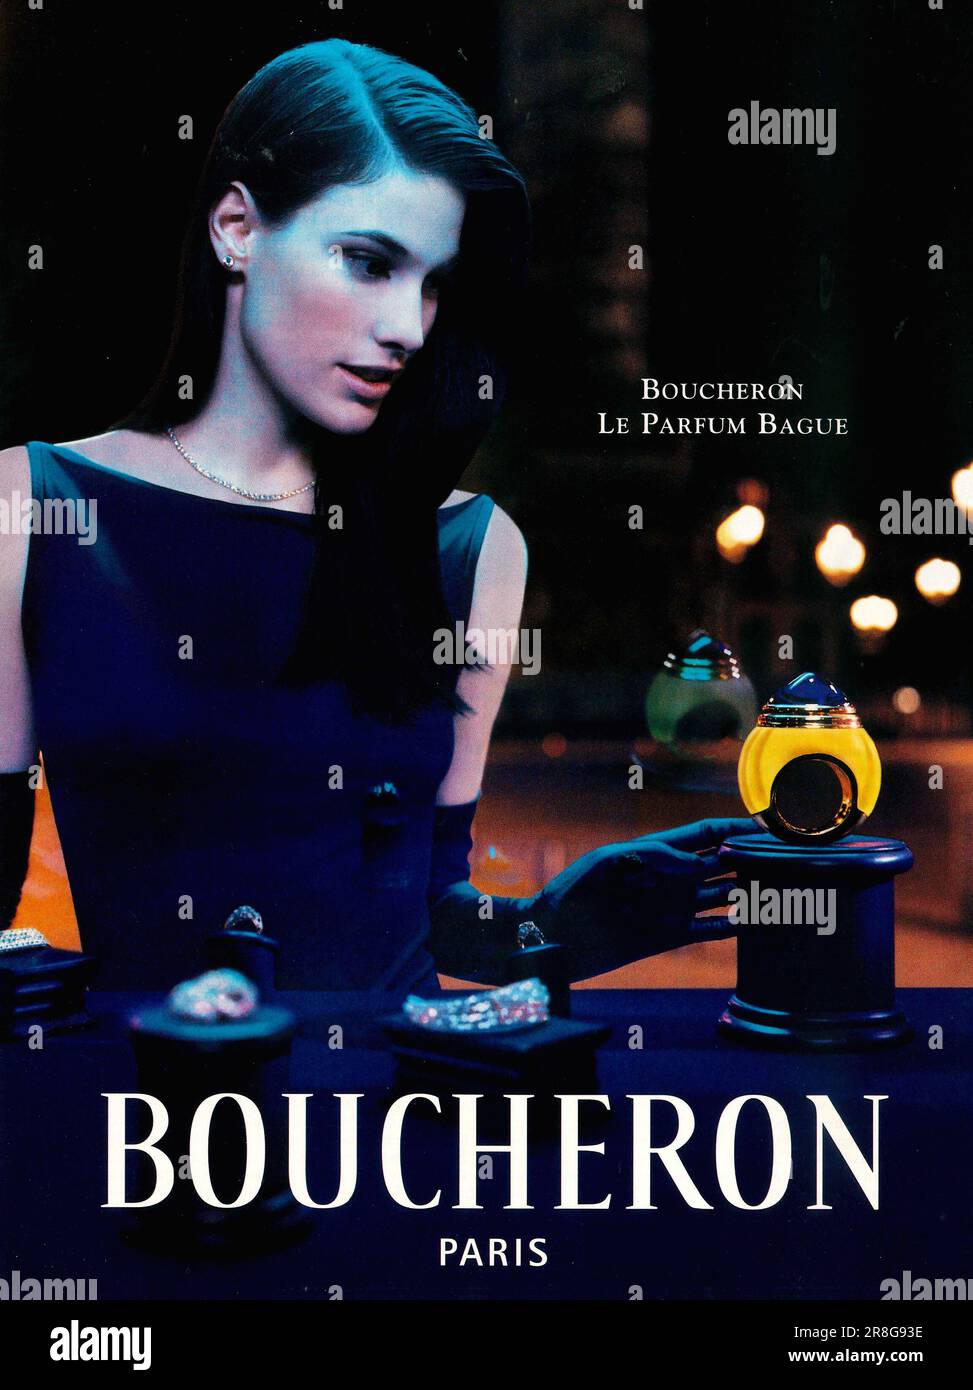 Boucheron Paris le Parfum bague avec MARY ANNE FLETCHER dans un magazine 1999 Banque D'Images